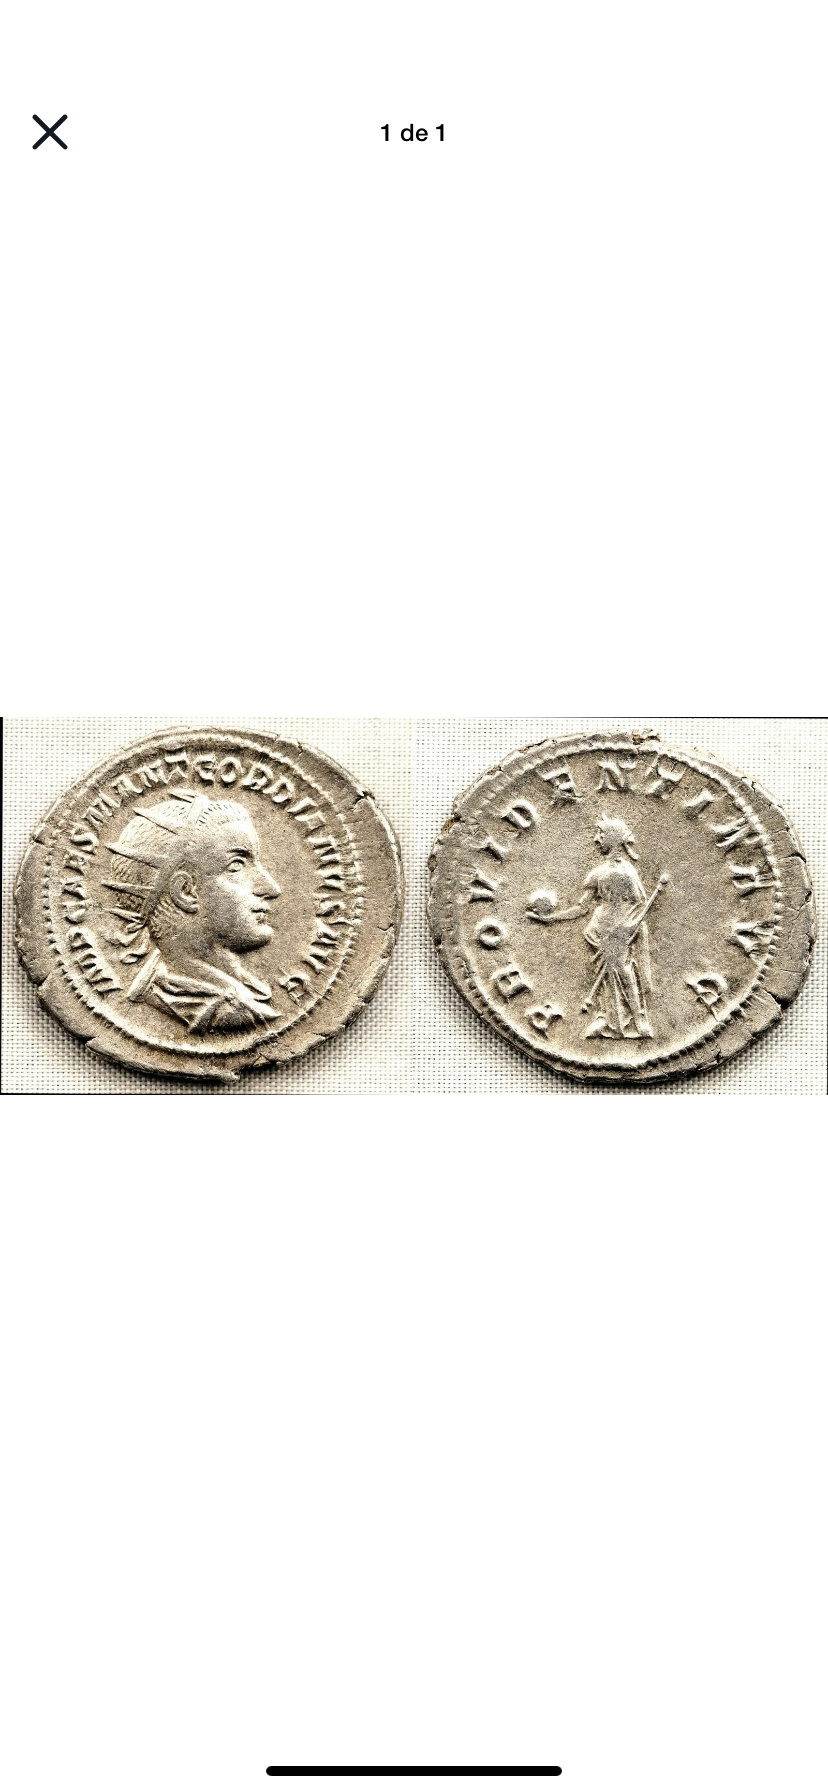 Autenticidad? Antoninianos Gordiano III  7f586c10